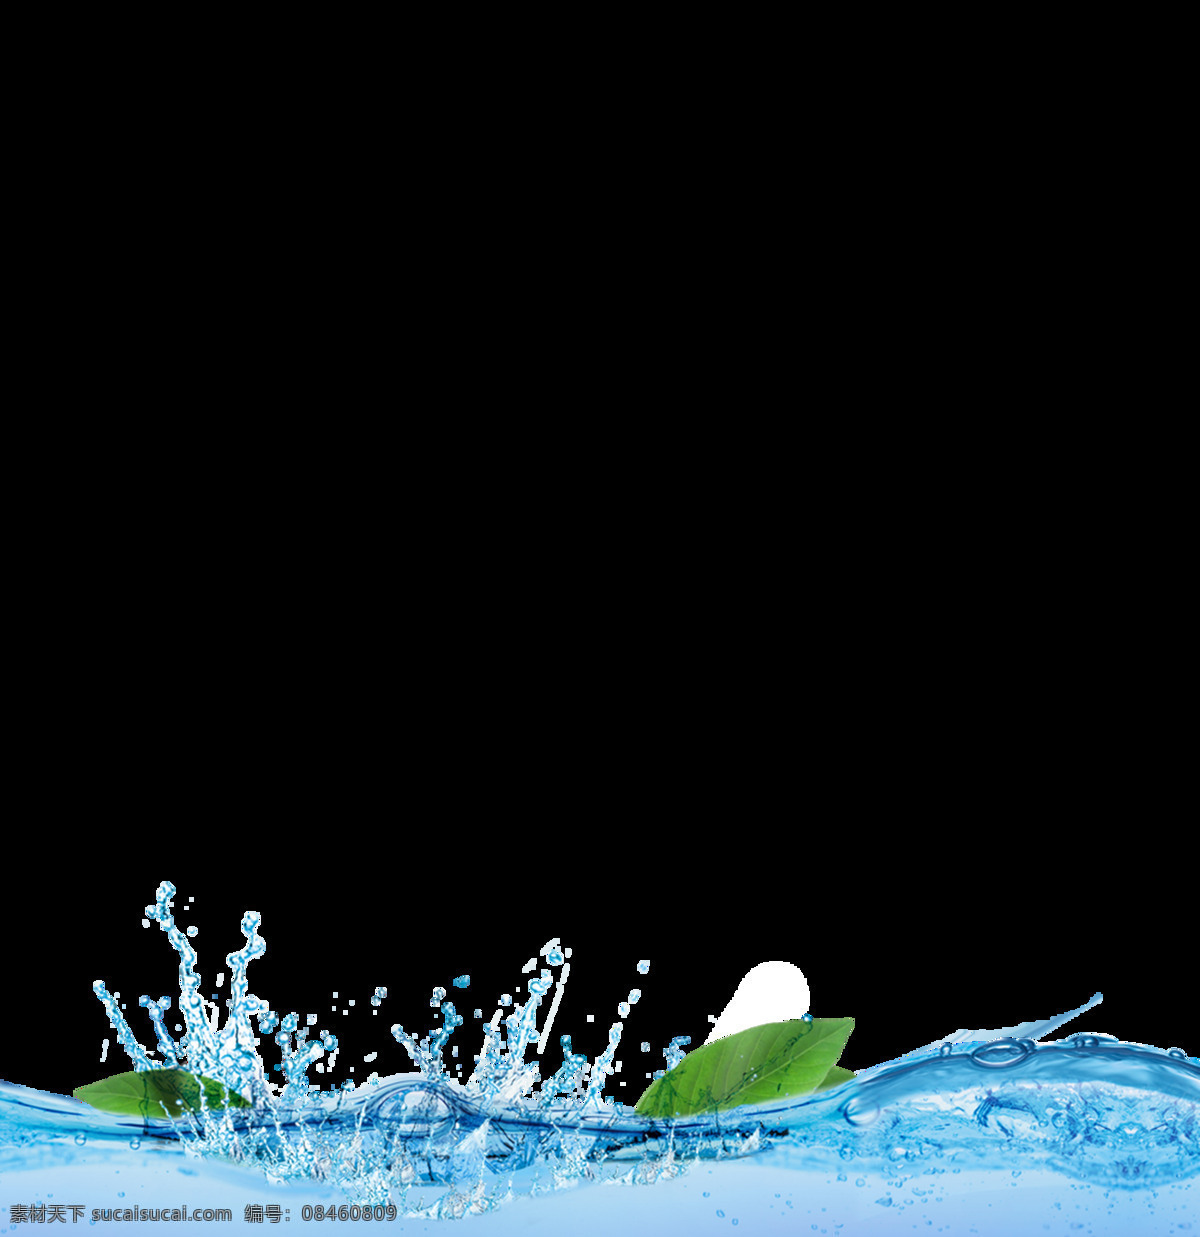 液体 透明 清凉 水滴 液态 流水 流动 柔 元素 流体 流质 叶子 绿色 飘浮 溅射 清爽